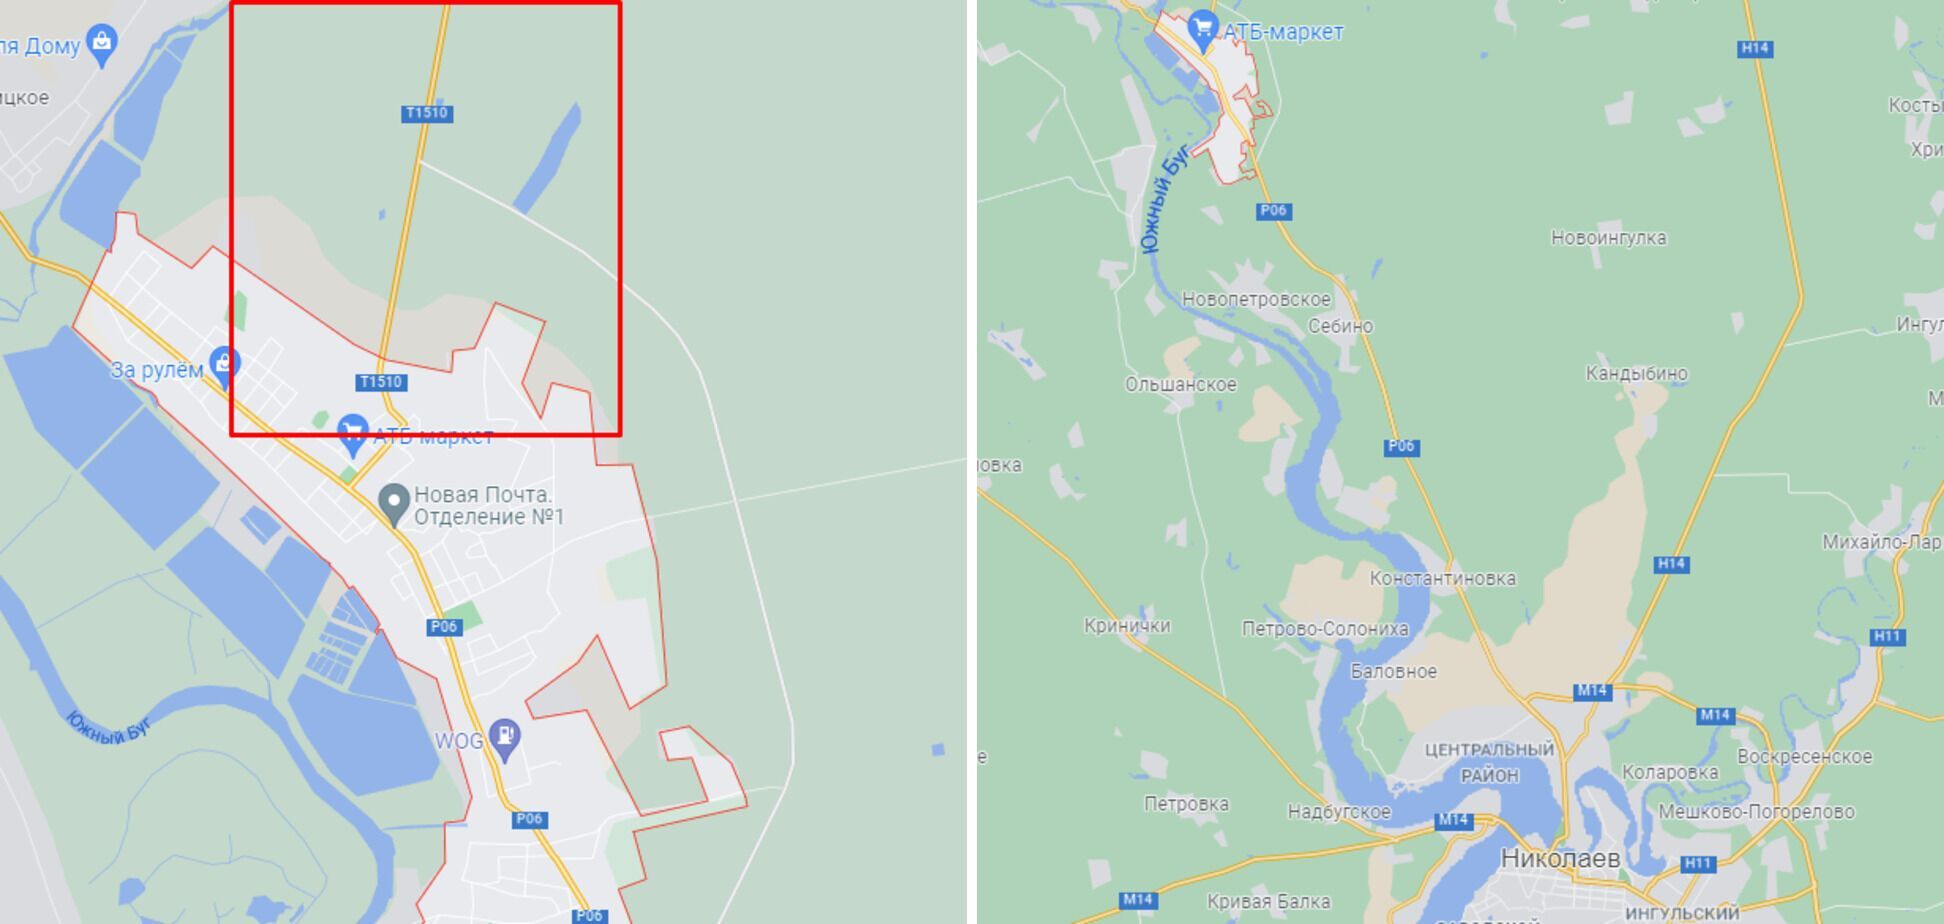 ДТП сталася під Новою Одесою, що неподалік Миколаєва.